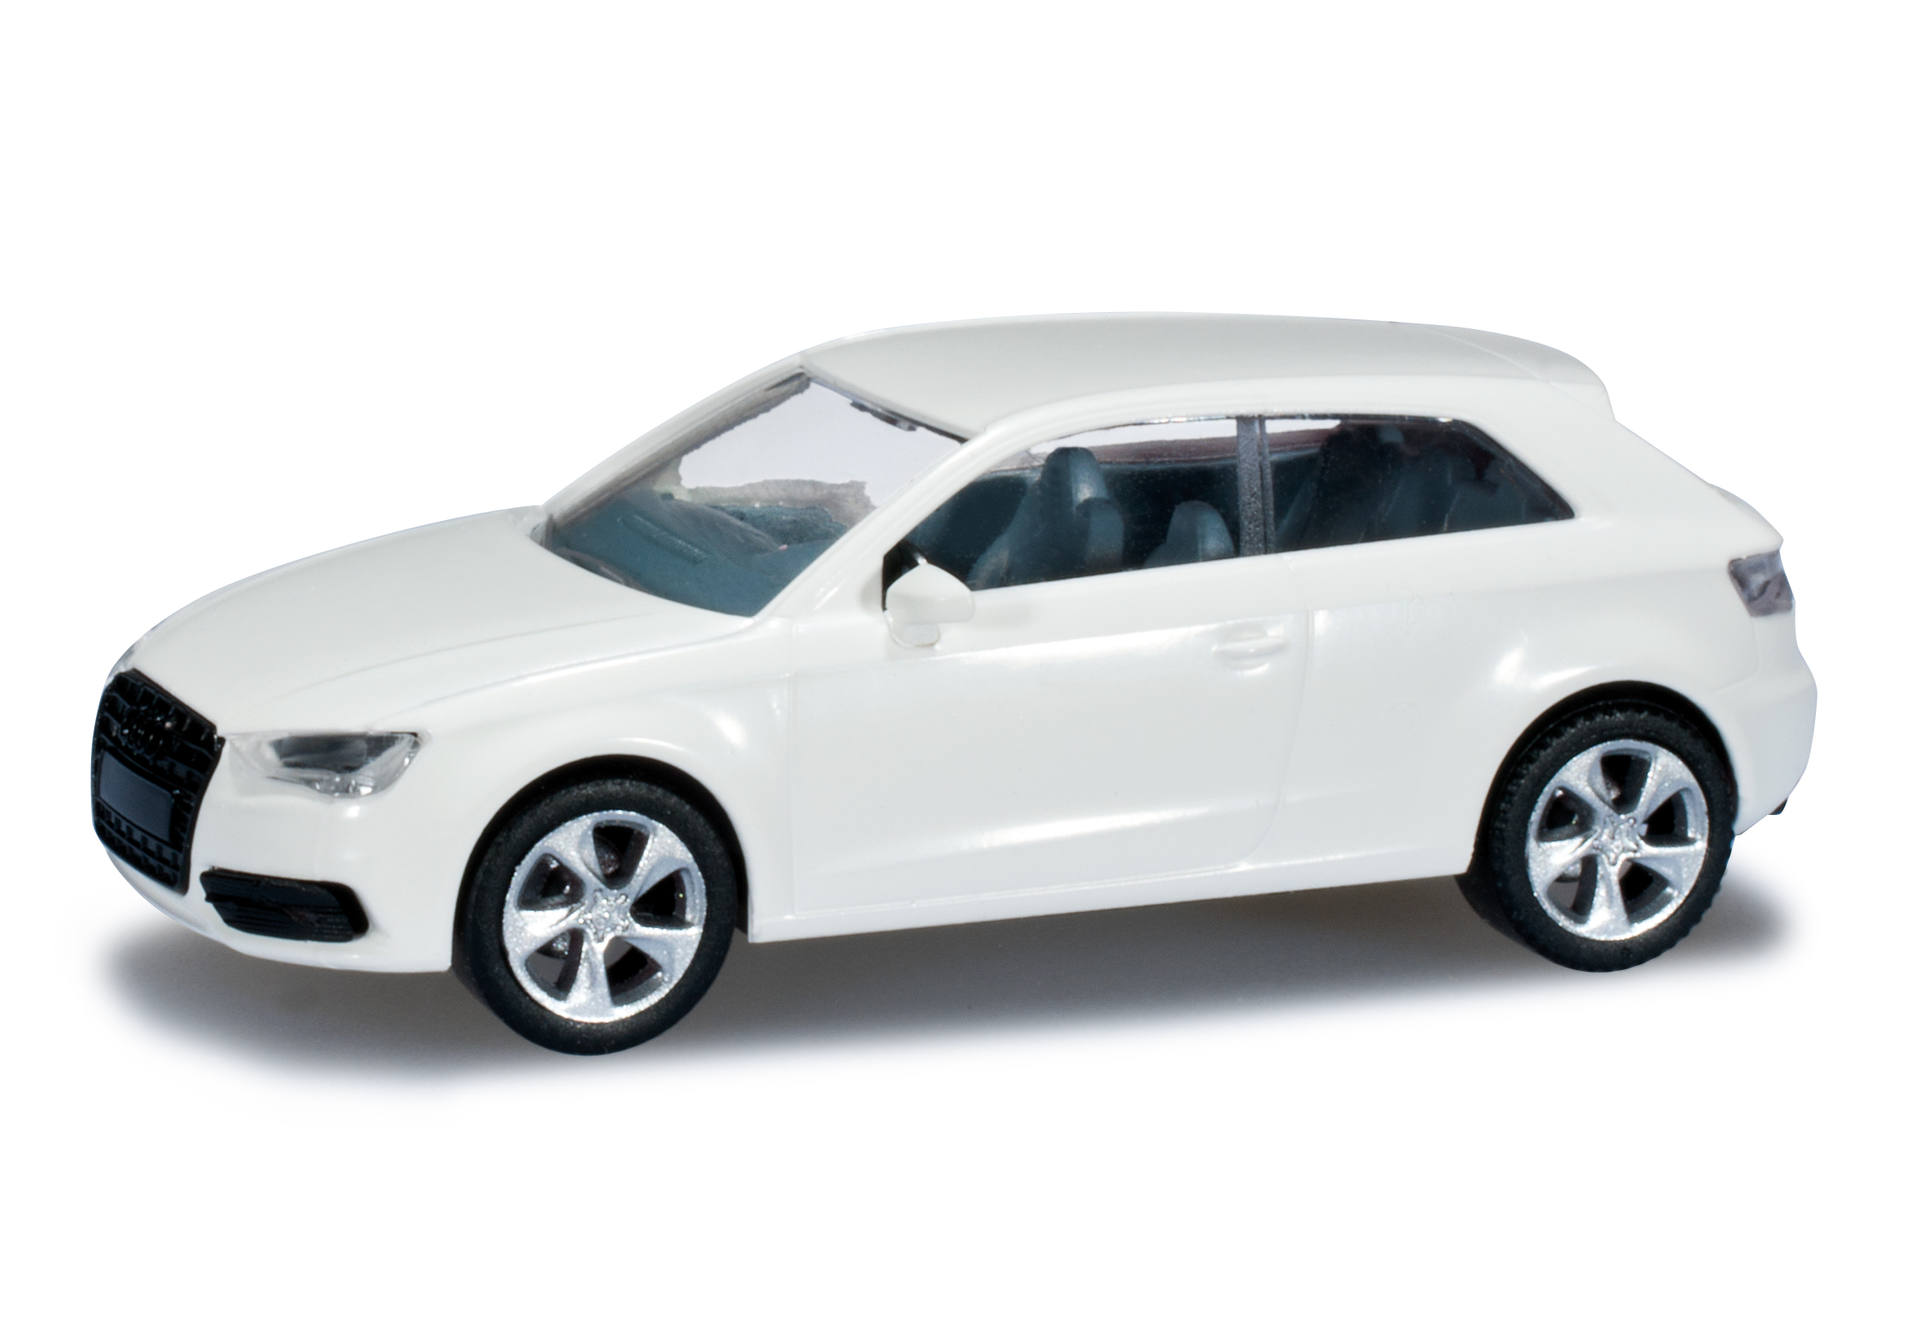 Audi A3, white